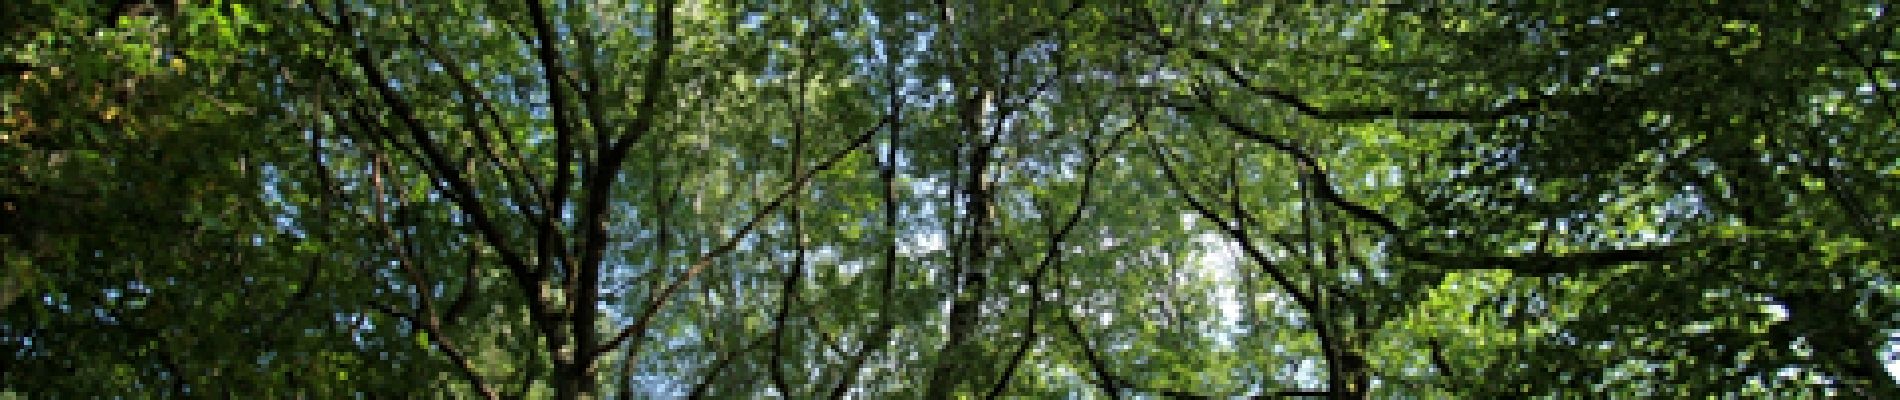 POI Ferrières - 2 - Très haut dans les branches - Photo